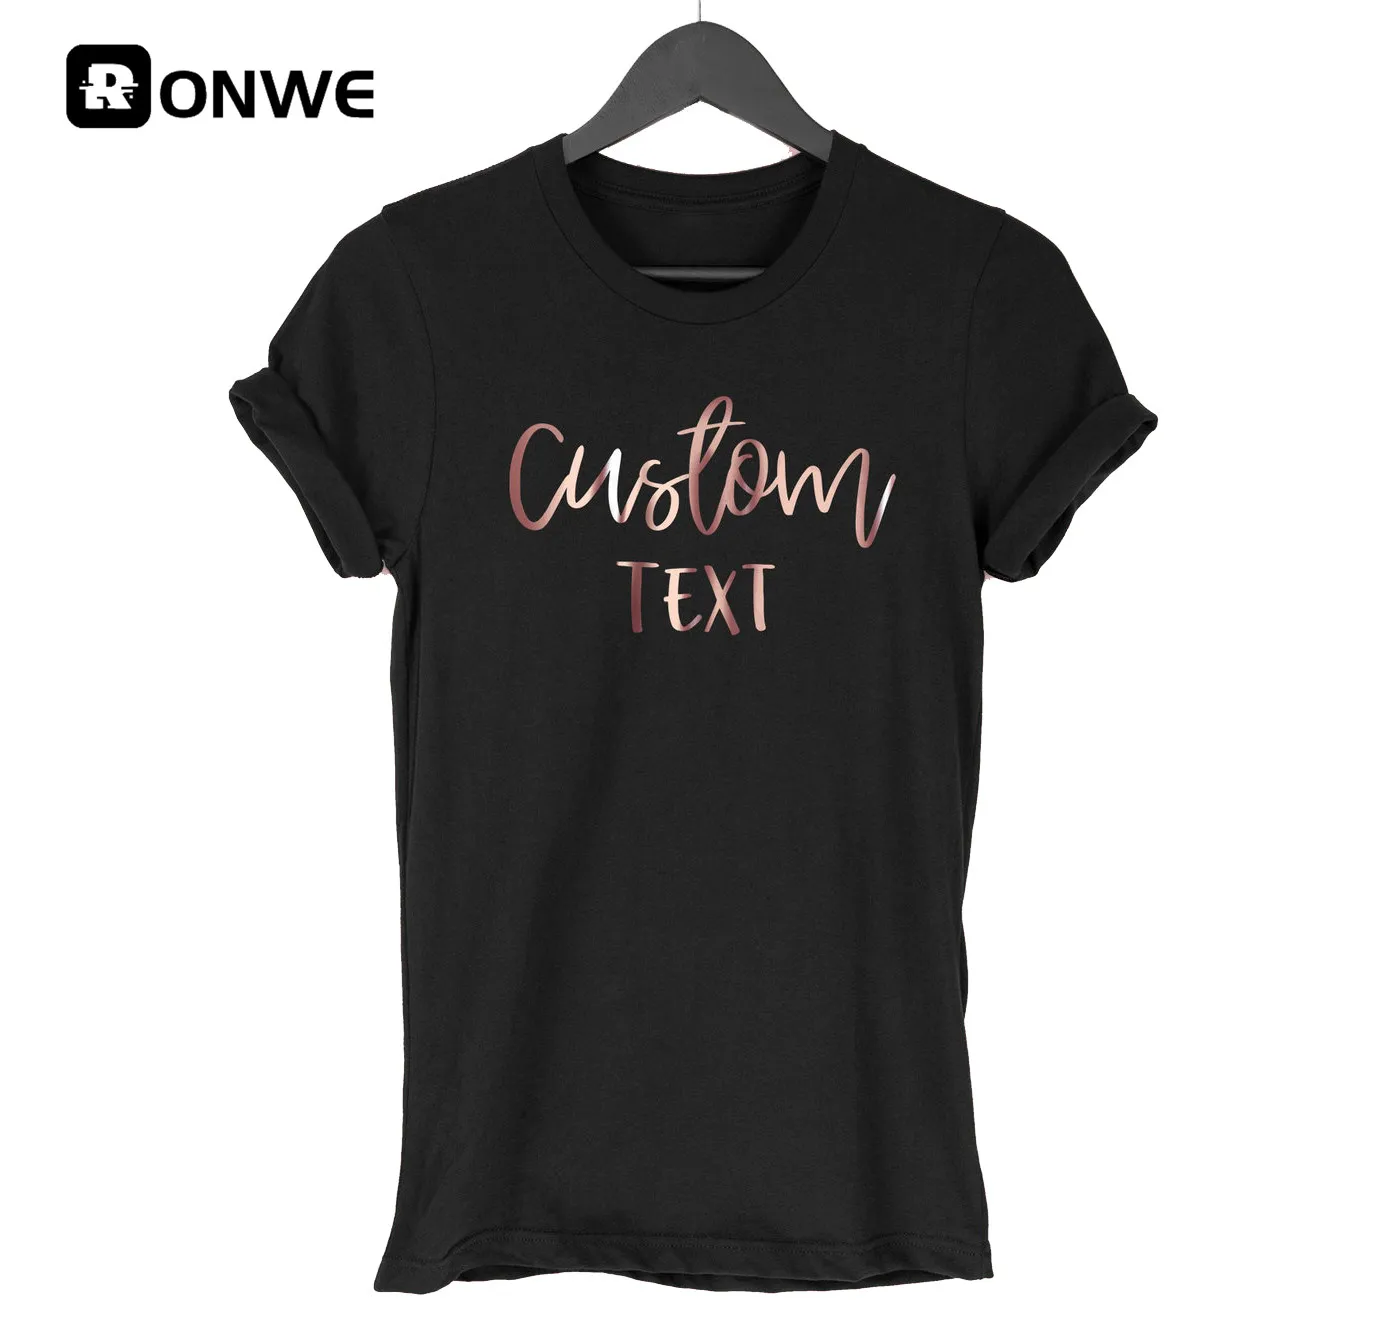 Women-Customize-T-shirt-Personalize-Girl-Custom-Text-T-shirt-Women-s-DIY-t-shirt-Wholesale.jpg